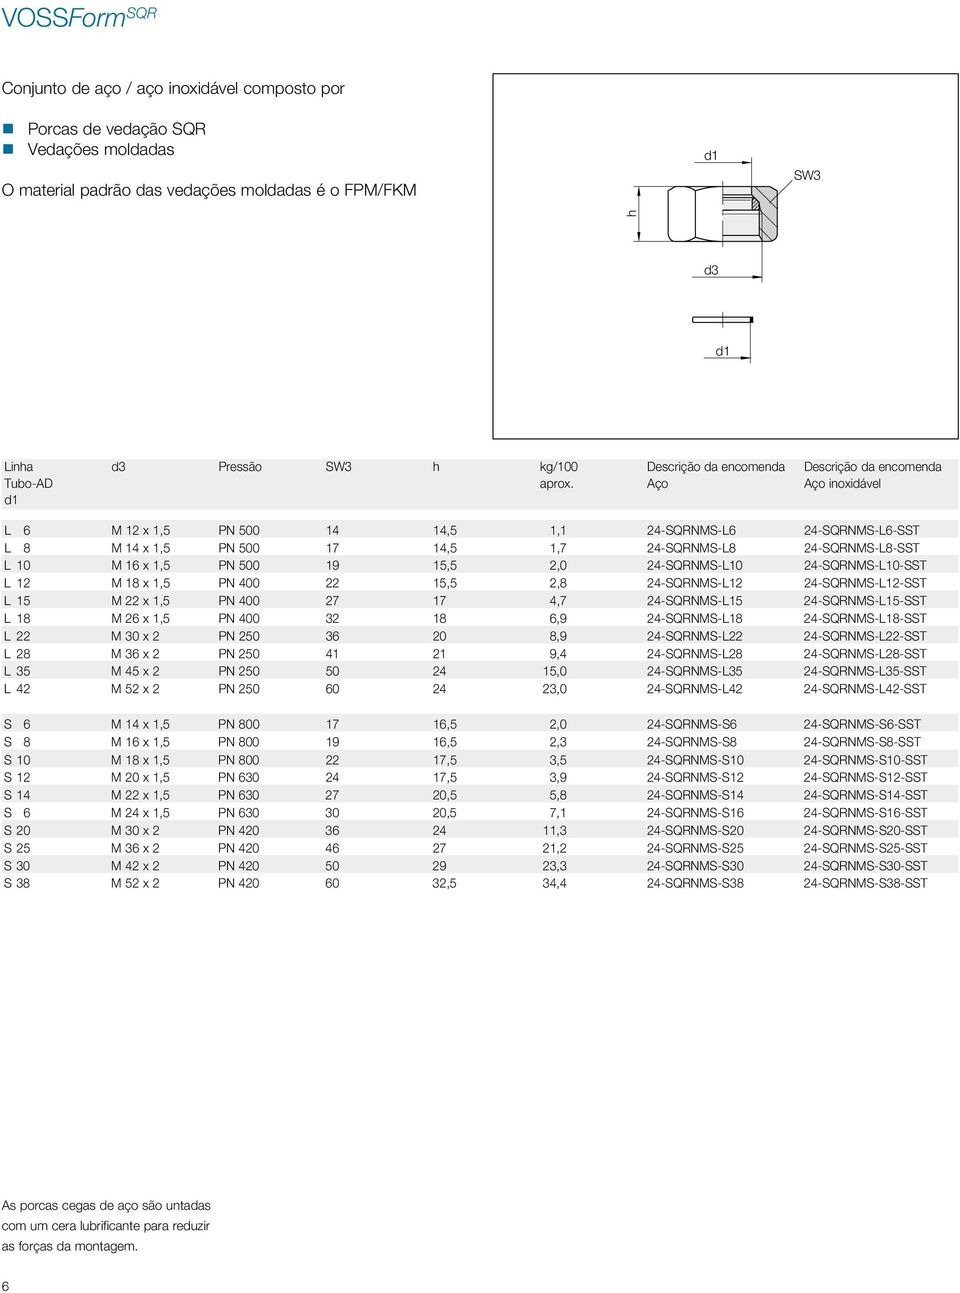 Descrição da encomenda Aço Descrição da encomenda Aço inoxidável L 6 M 12 x 1,5 PN 500 14 14,5 1,1 24-SQRNMS-L6 24-SQRNMS-L6-SST L 8 M 14 x 1,5 PN 500 17 14,5 1,7 24-SQRNMS-L8 24-SQRNMS-L8-SST L 10 M